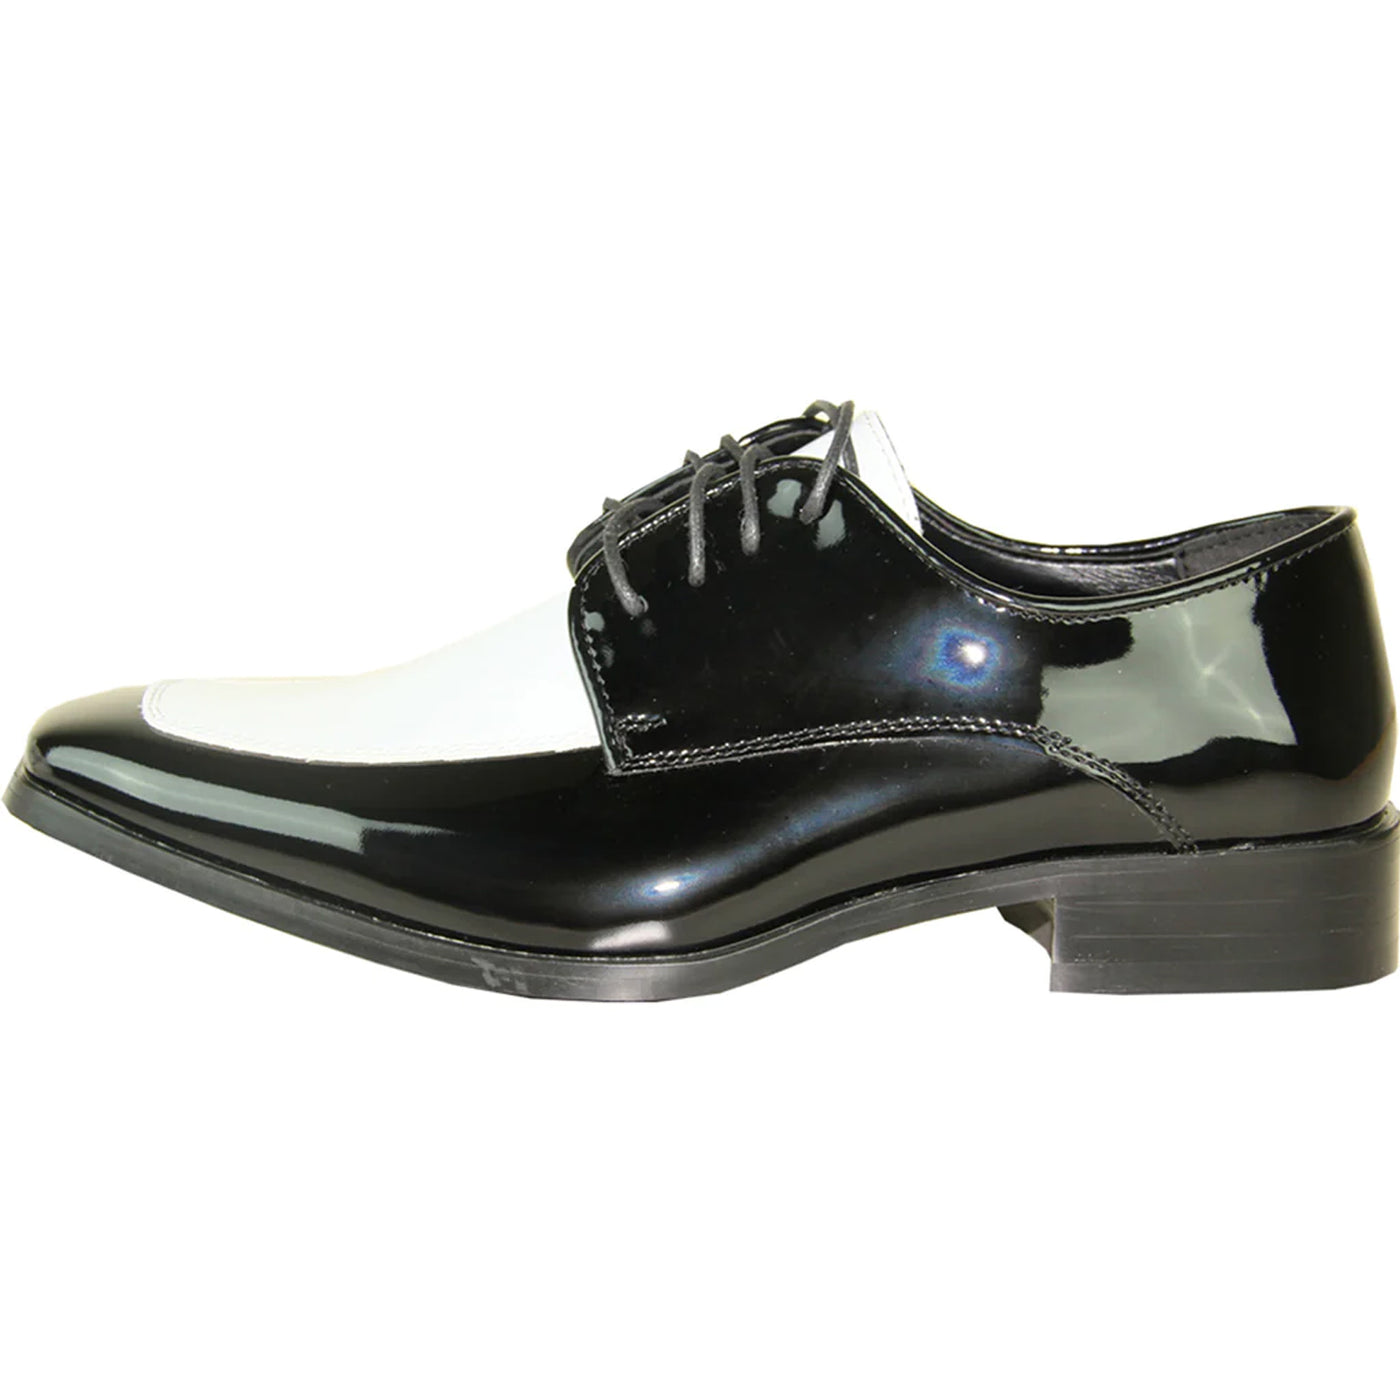 Mens Classic Moc Toe Shiny Patent Tuxedo Prom Shoe in Black & White